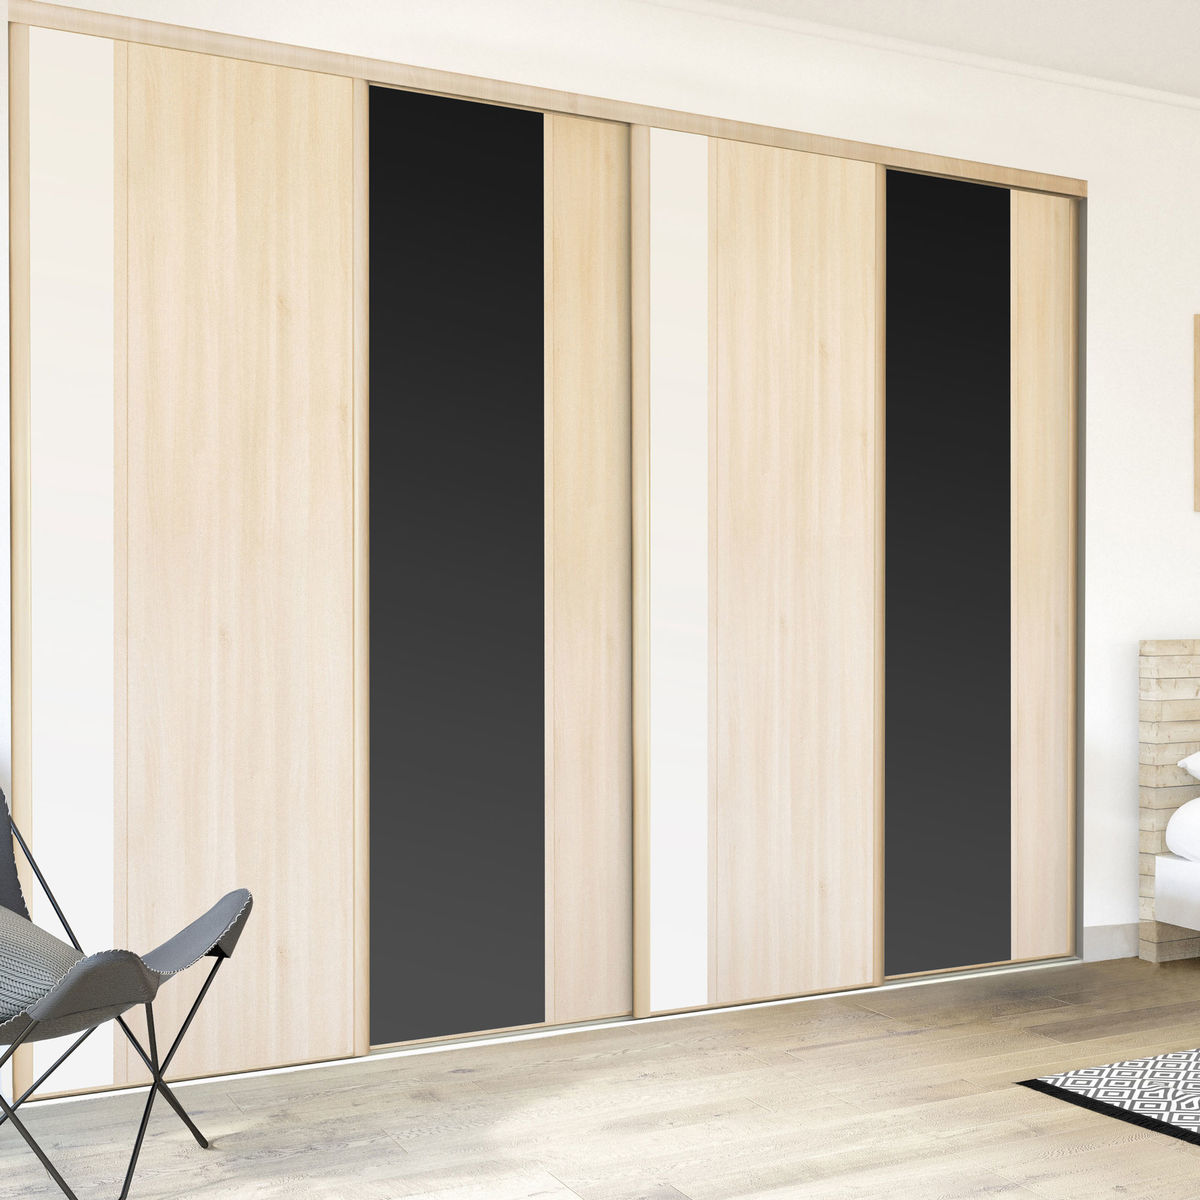 Façade de placard coulissante 4 portes décor acacia clair, décor blanc mat, décor noir intense